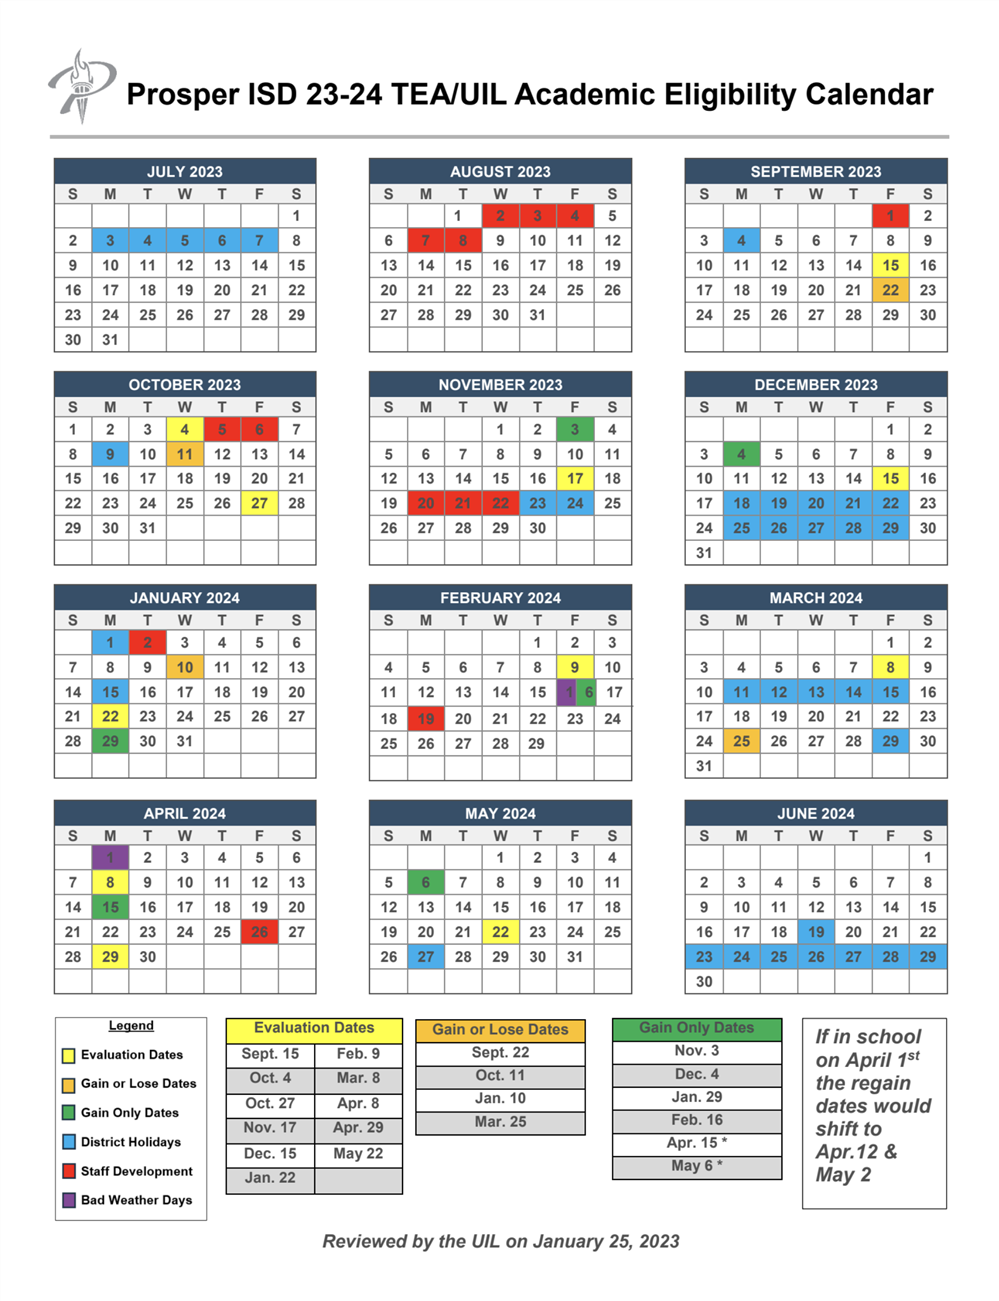 UIL/TEA Academic Eligibility Calendar